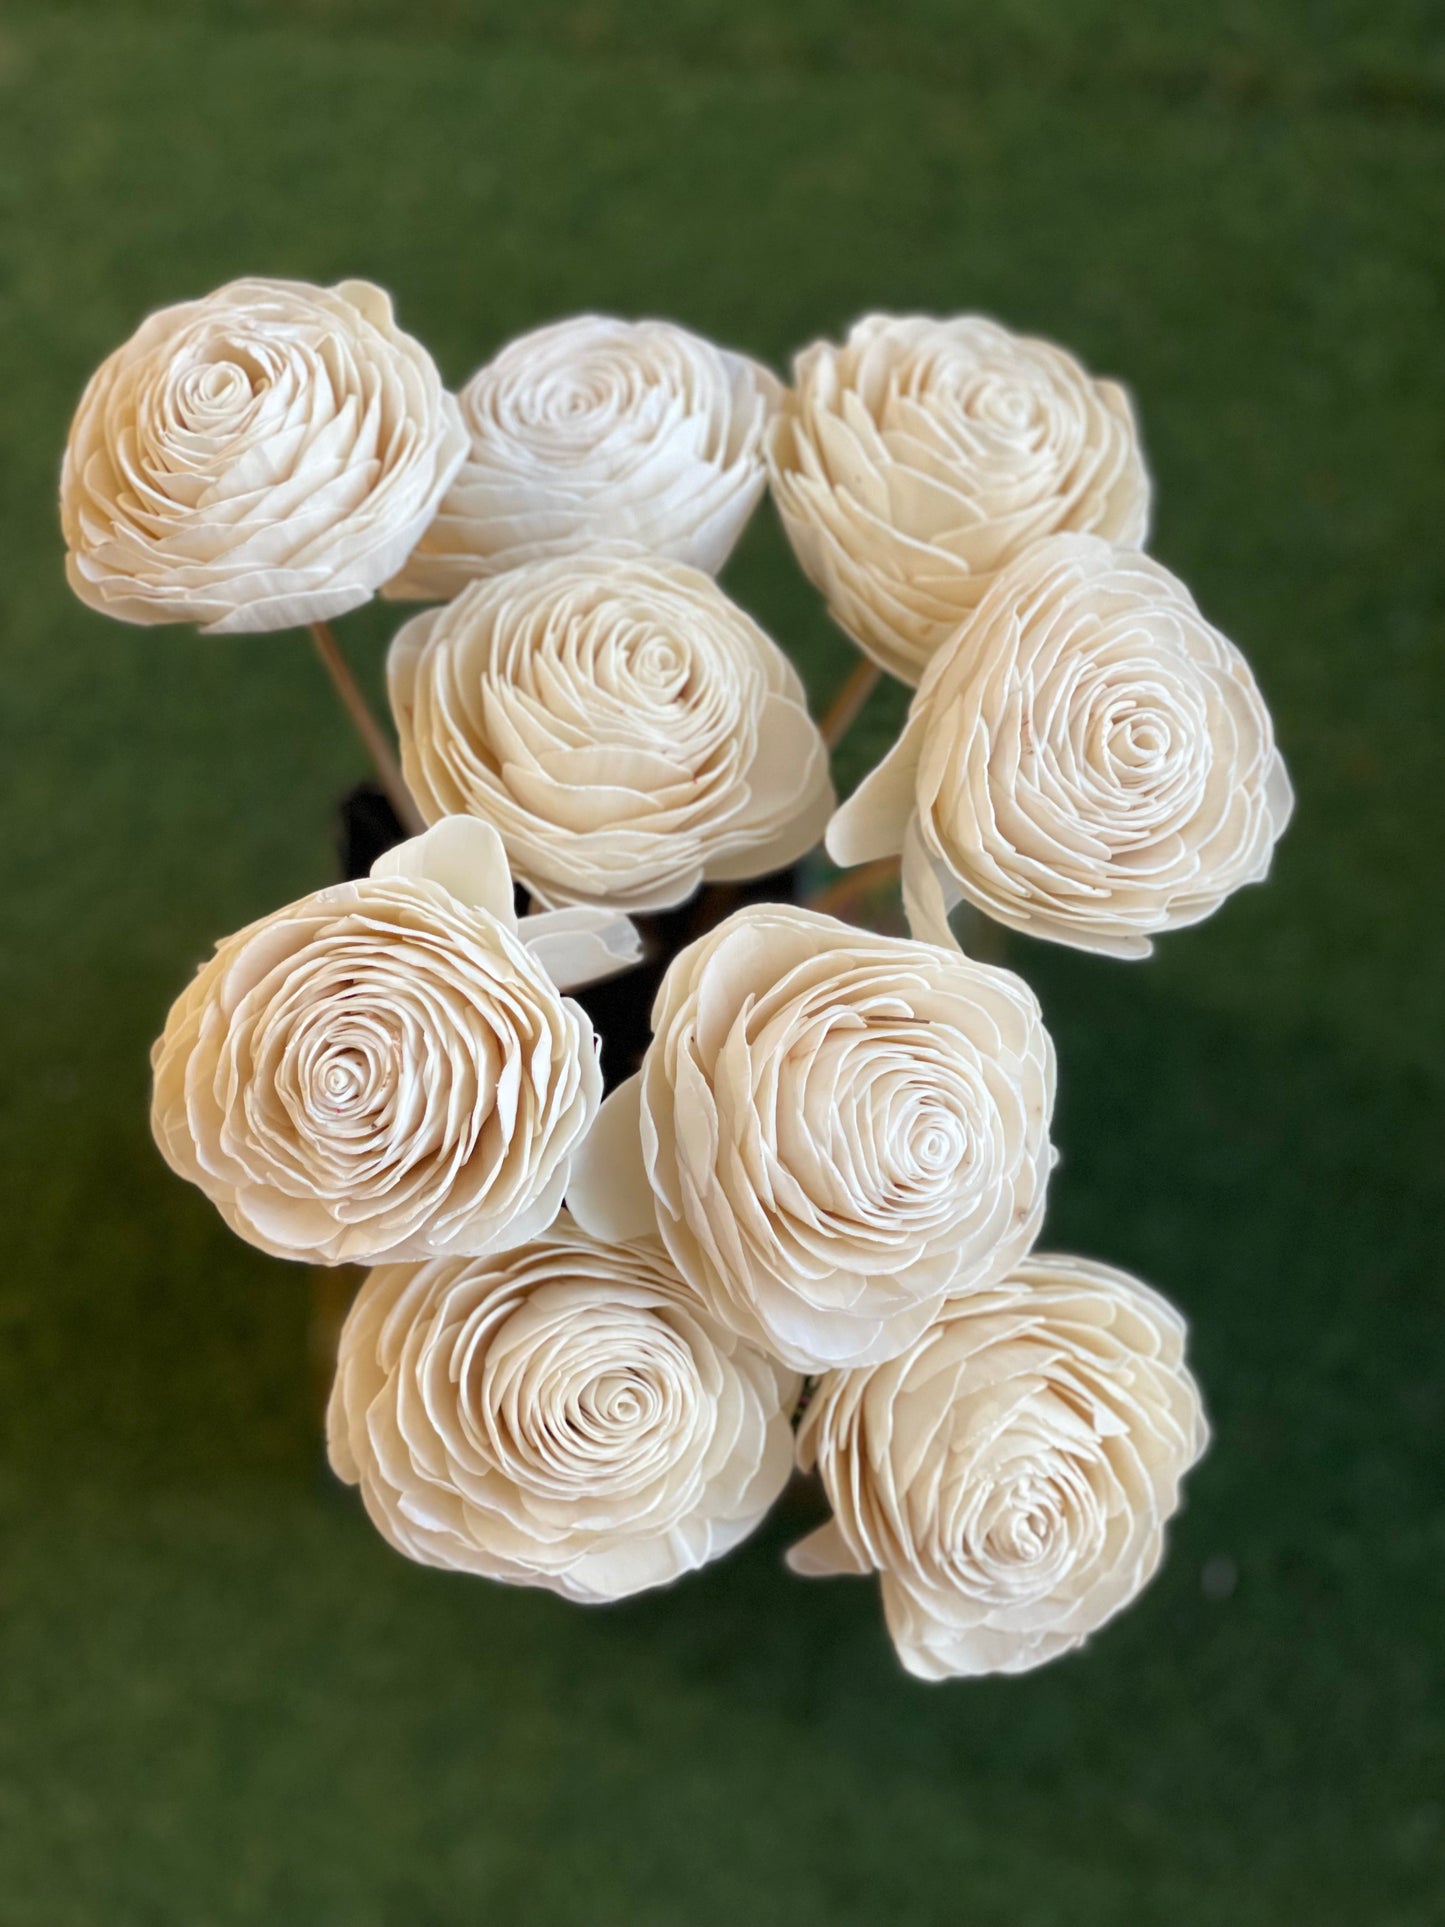 White Sholapith handmade rose - 12 cm size approximately